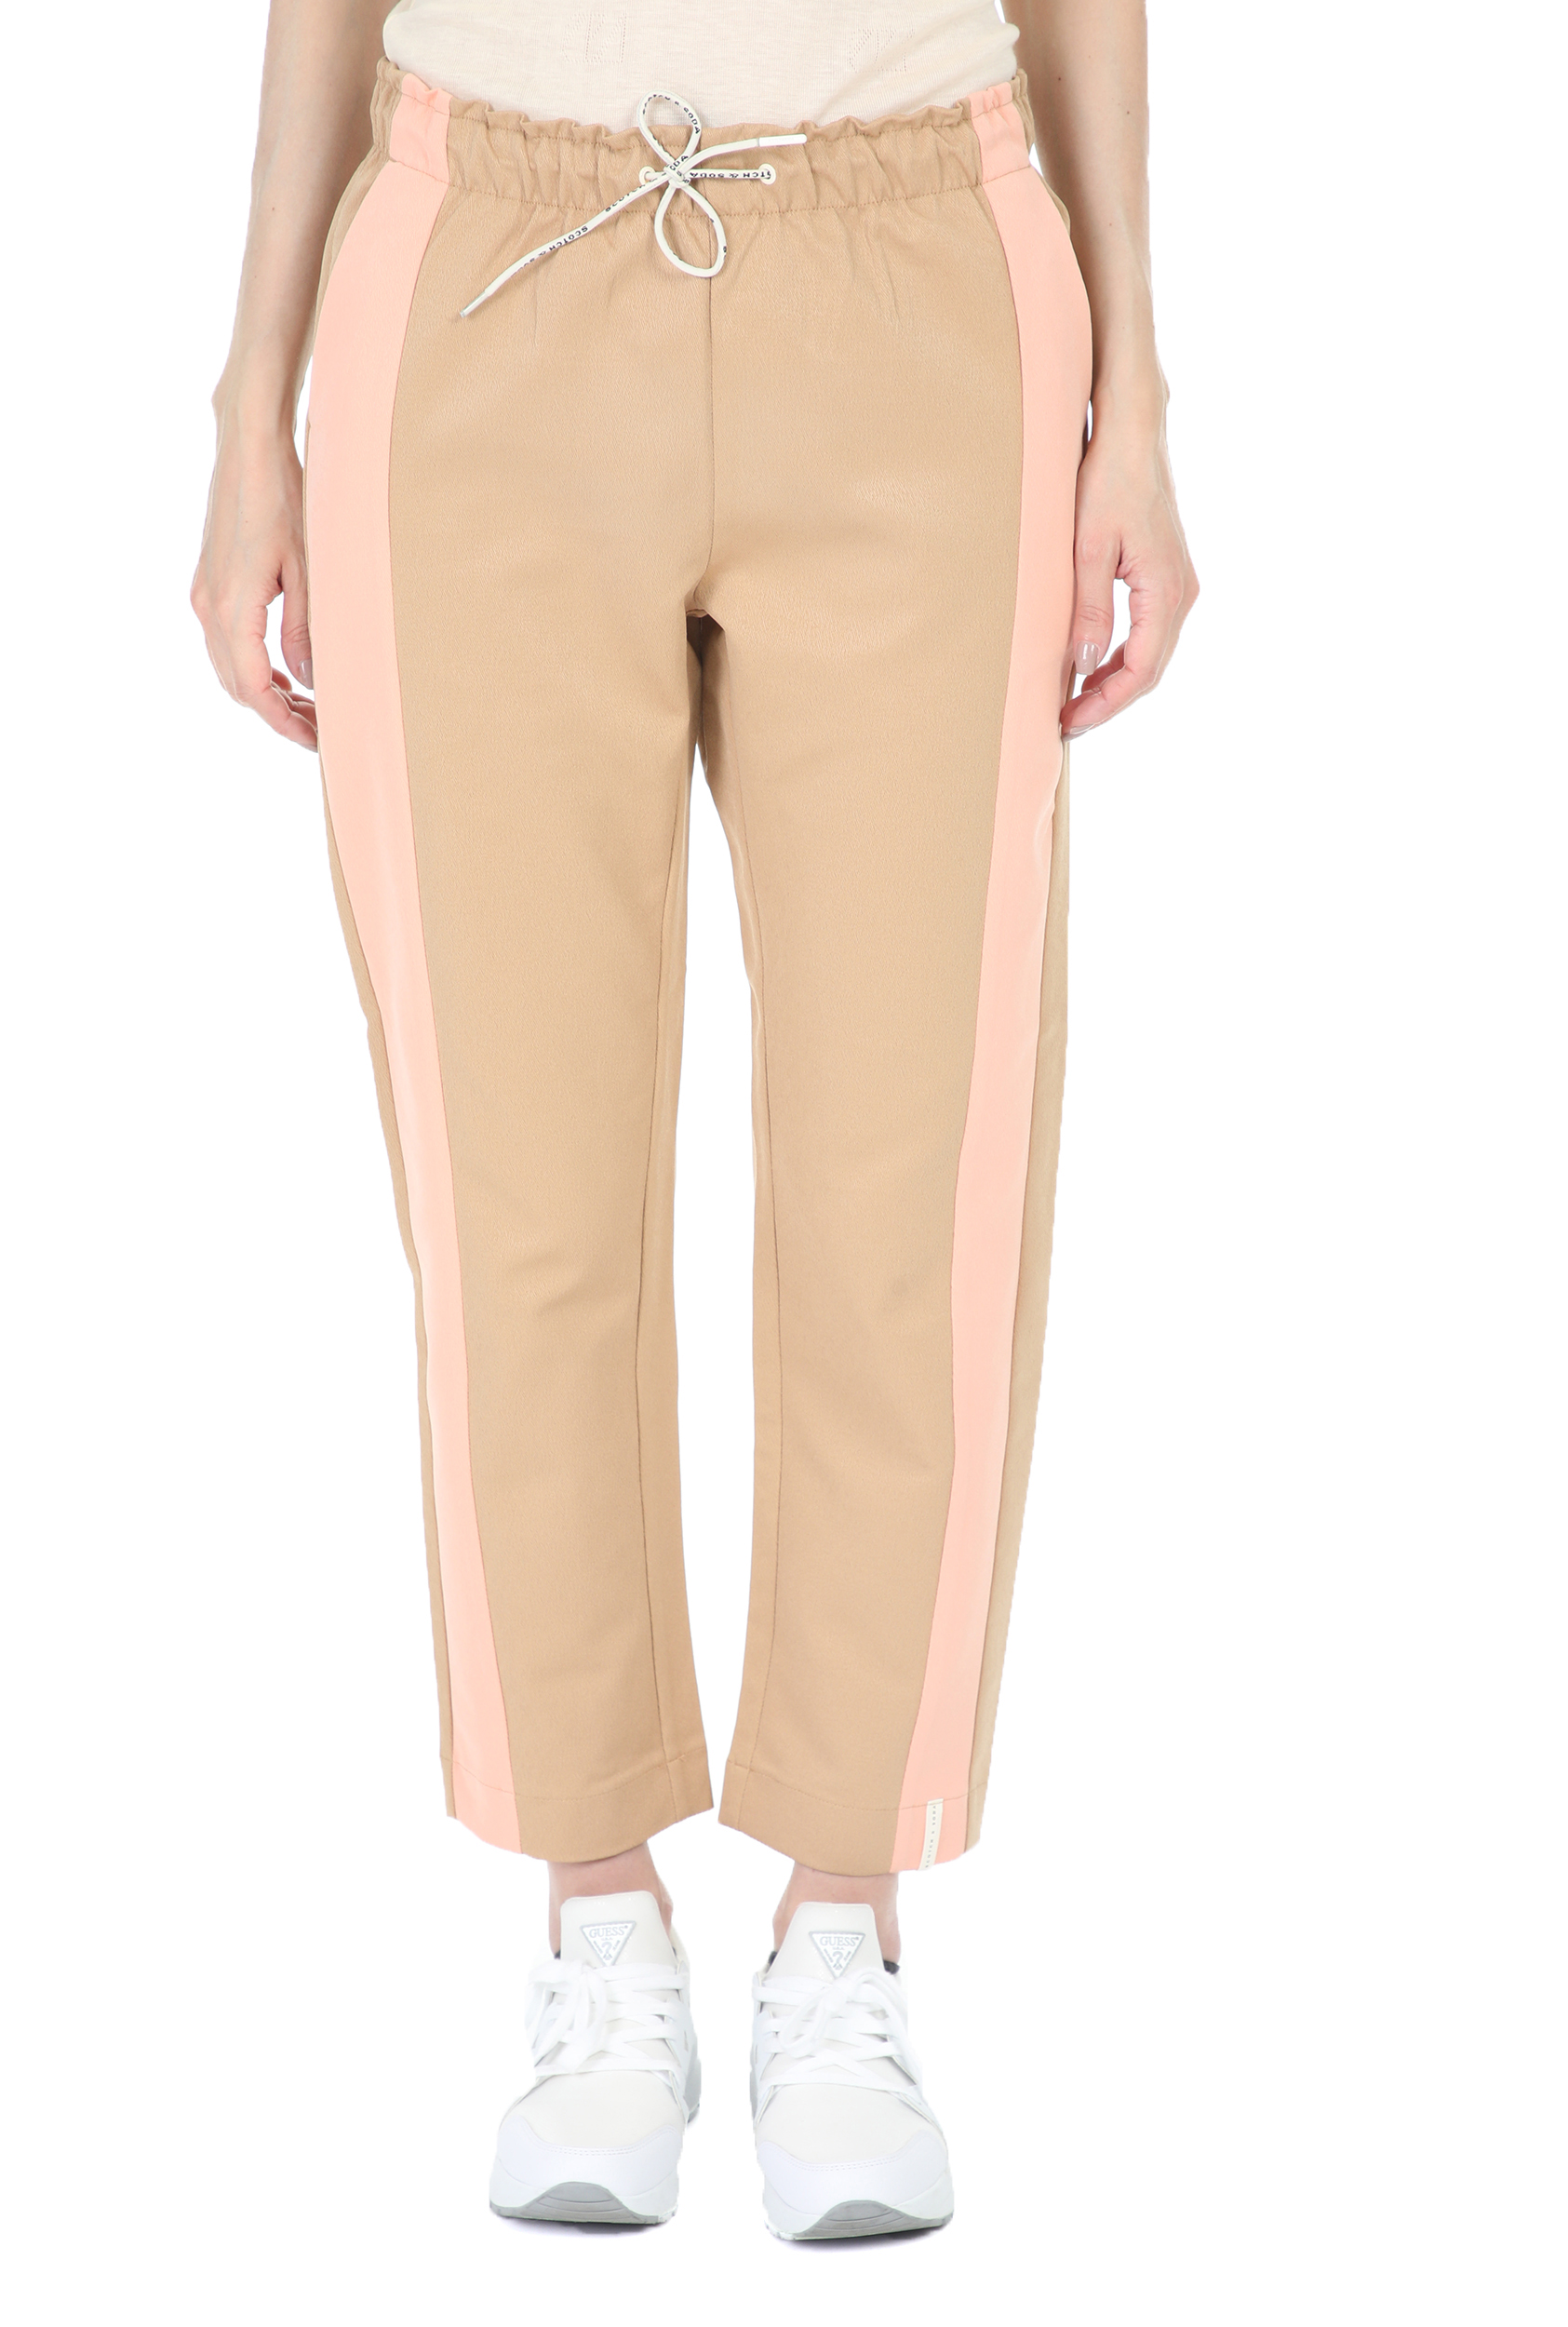 SCOTCH & SODA - Γυναικείο παντελόνι SCOTCH & SODA Club nomade tapered μπεζ ροζ Γυναικεία/Ρούχα/Παντελόνια/Casual